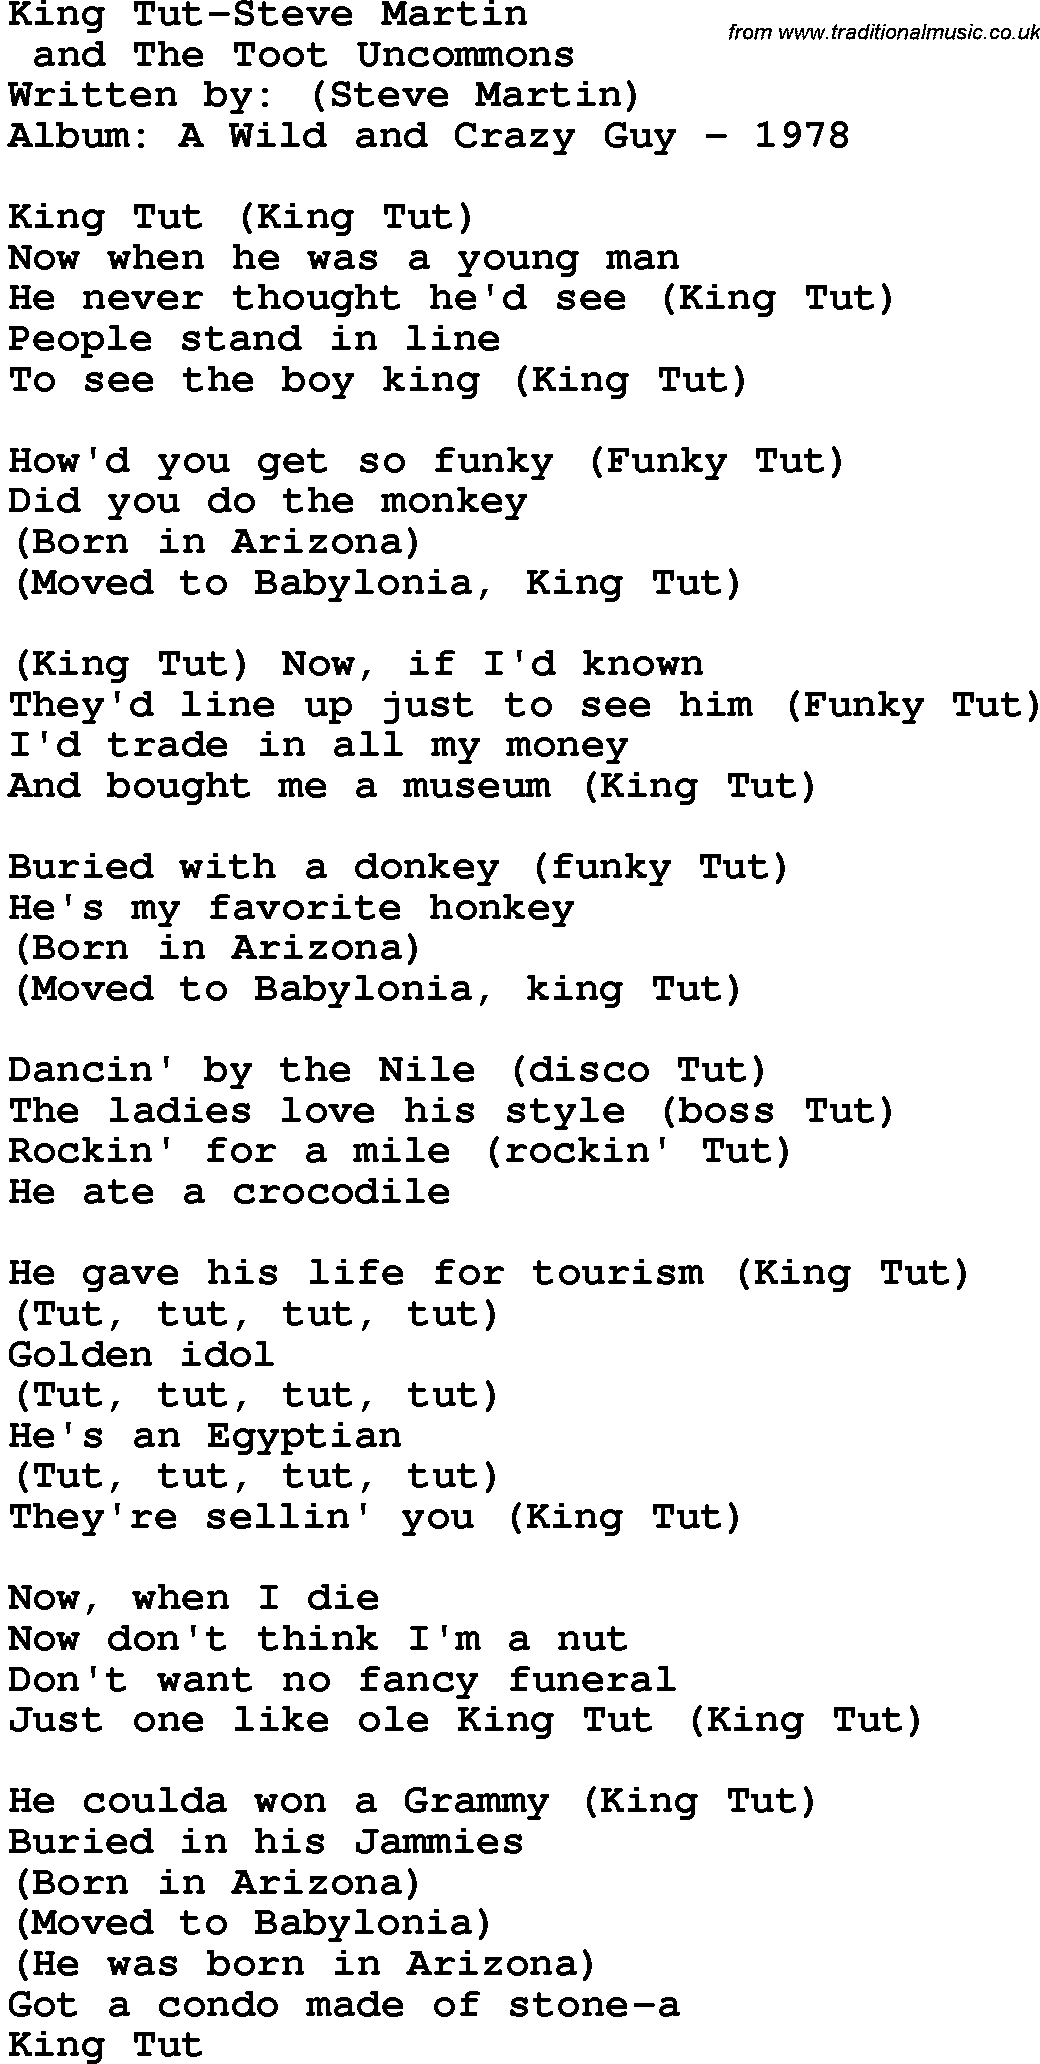 Novelty song: King Tut-Steve Martin lyrics